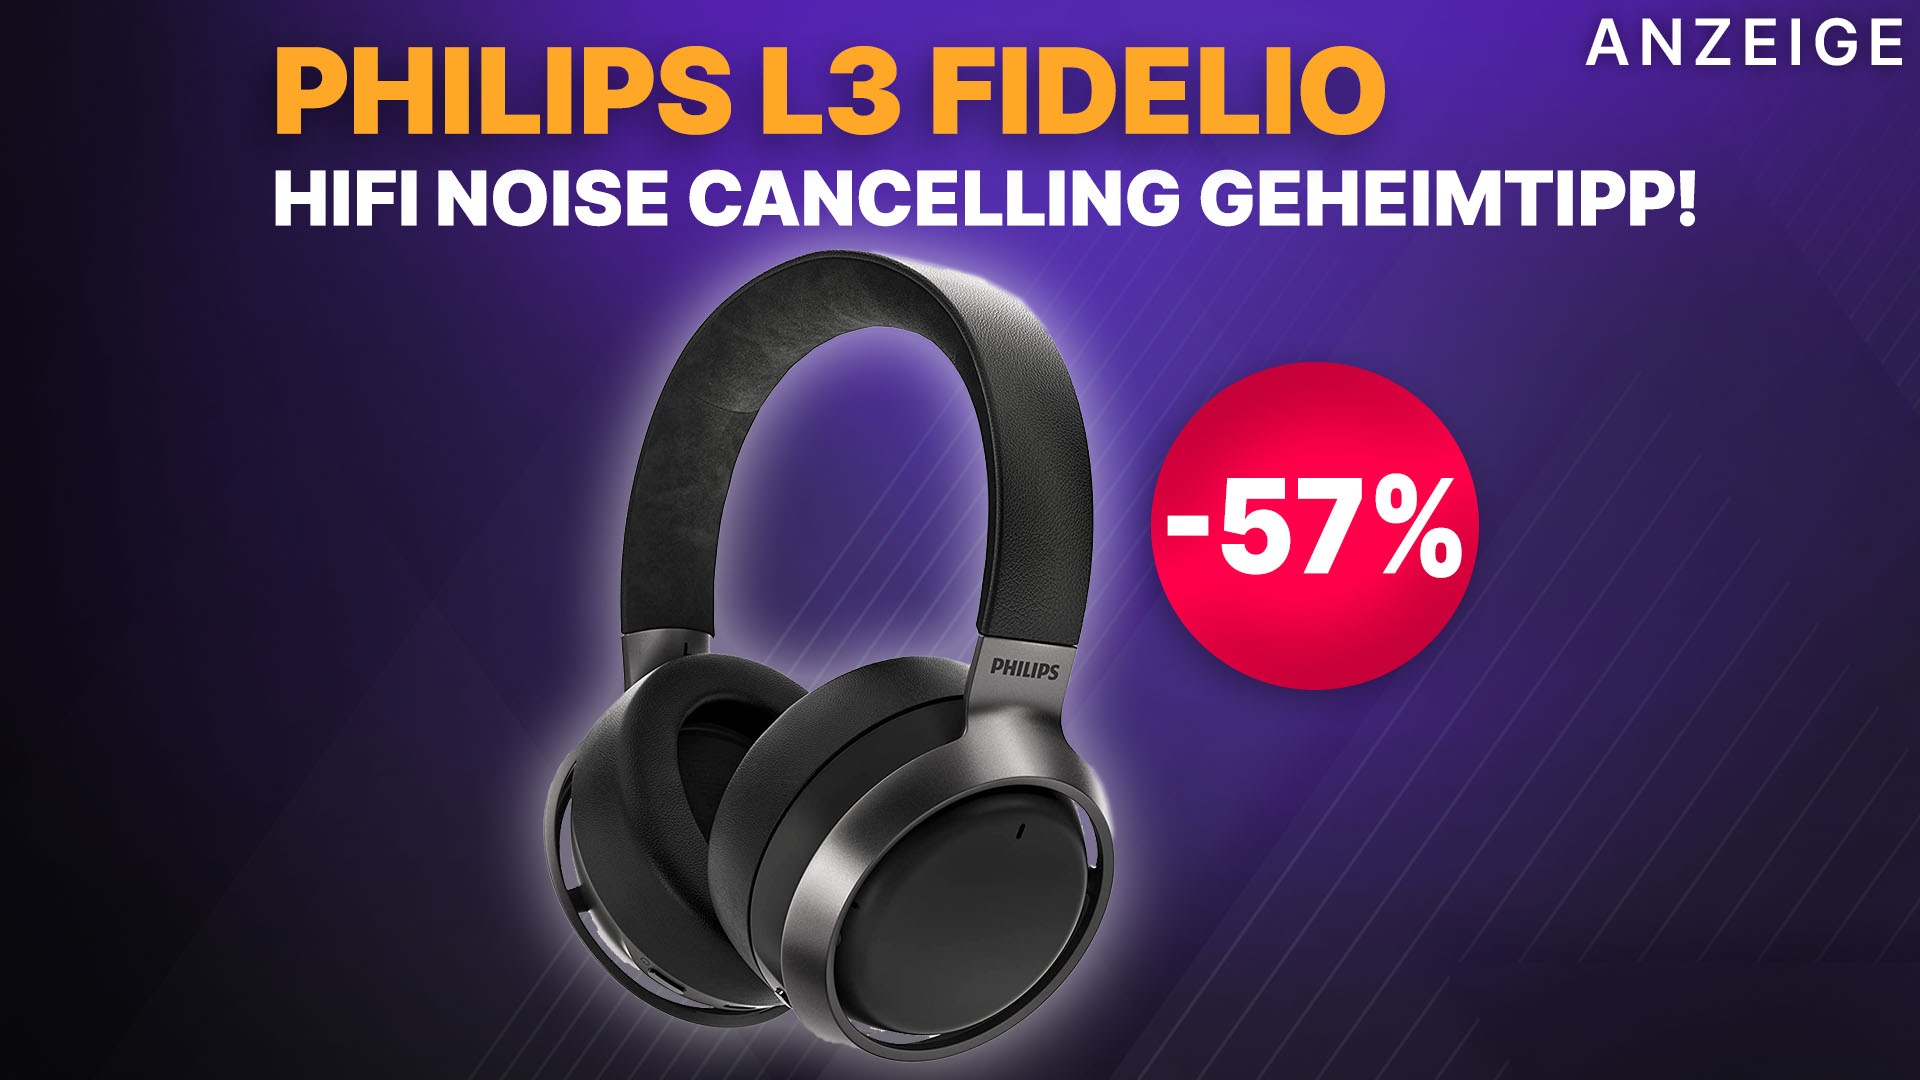 Fidelio HiFi zum Noise Headset Amazon jetzt krass halben Kopfhörer Geheimtipp reduziert Cancelling Philips ANC Preis! bei L3